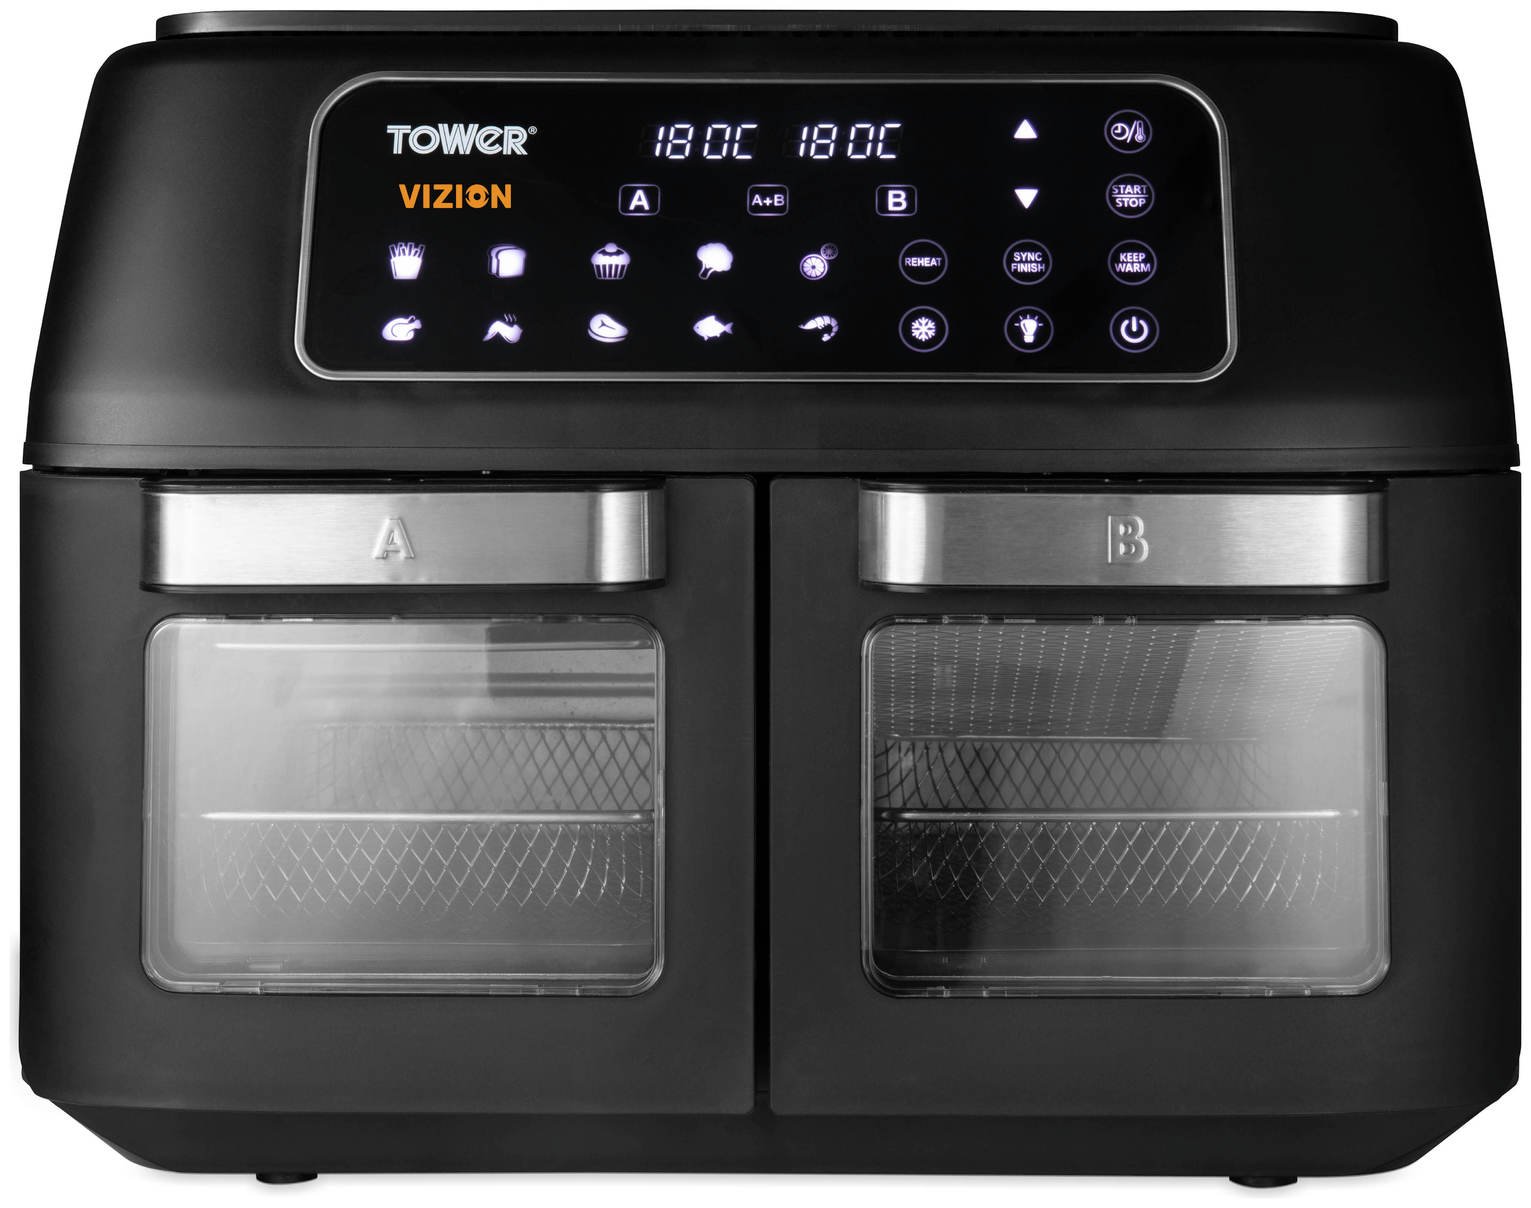 Tower T17102 Vortx Vizion 11L Dual Air Fryer Oven - Black